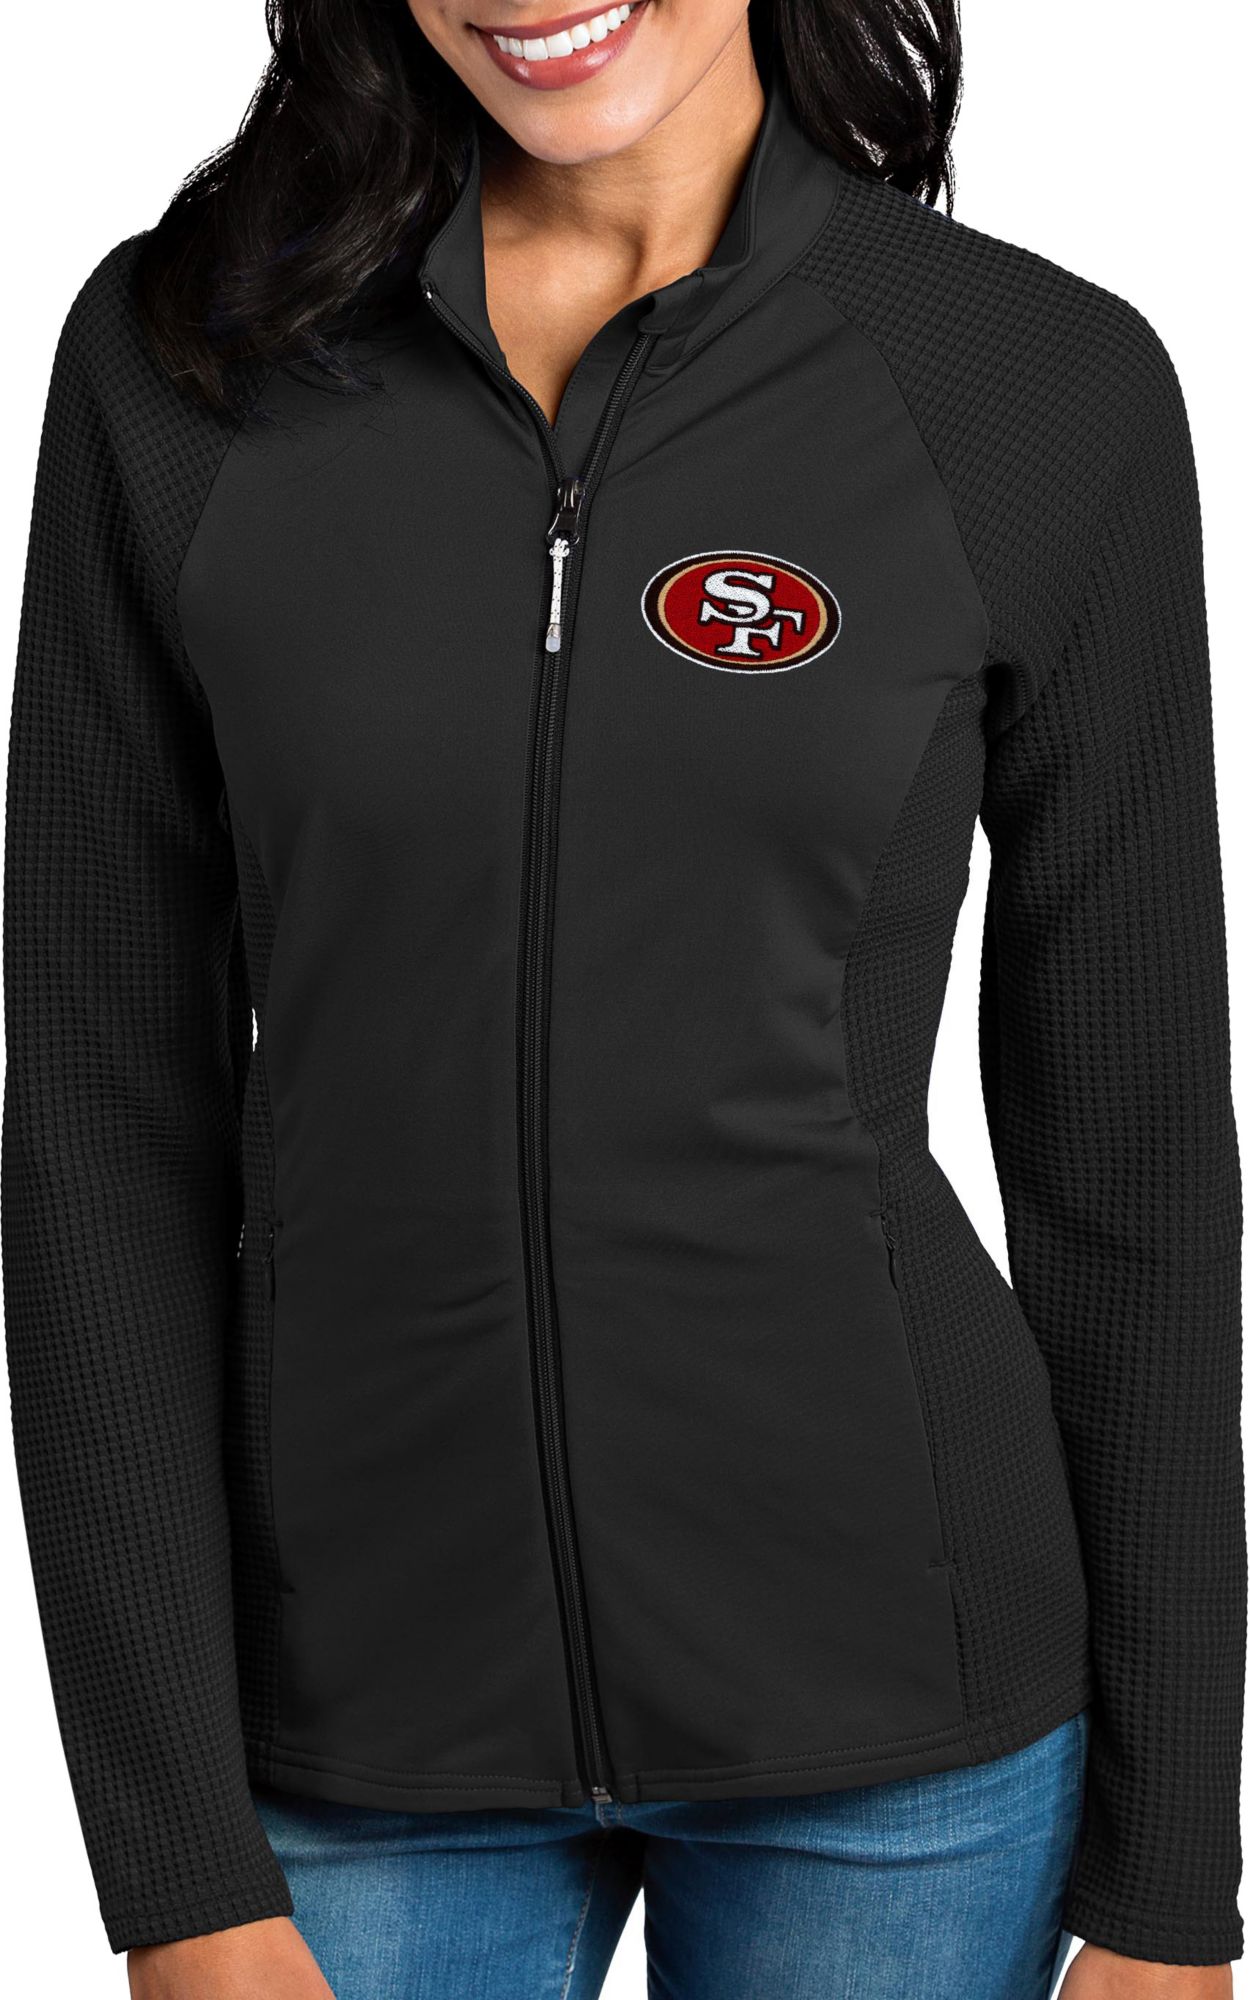 49ers black zip up hoodie